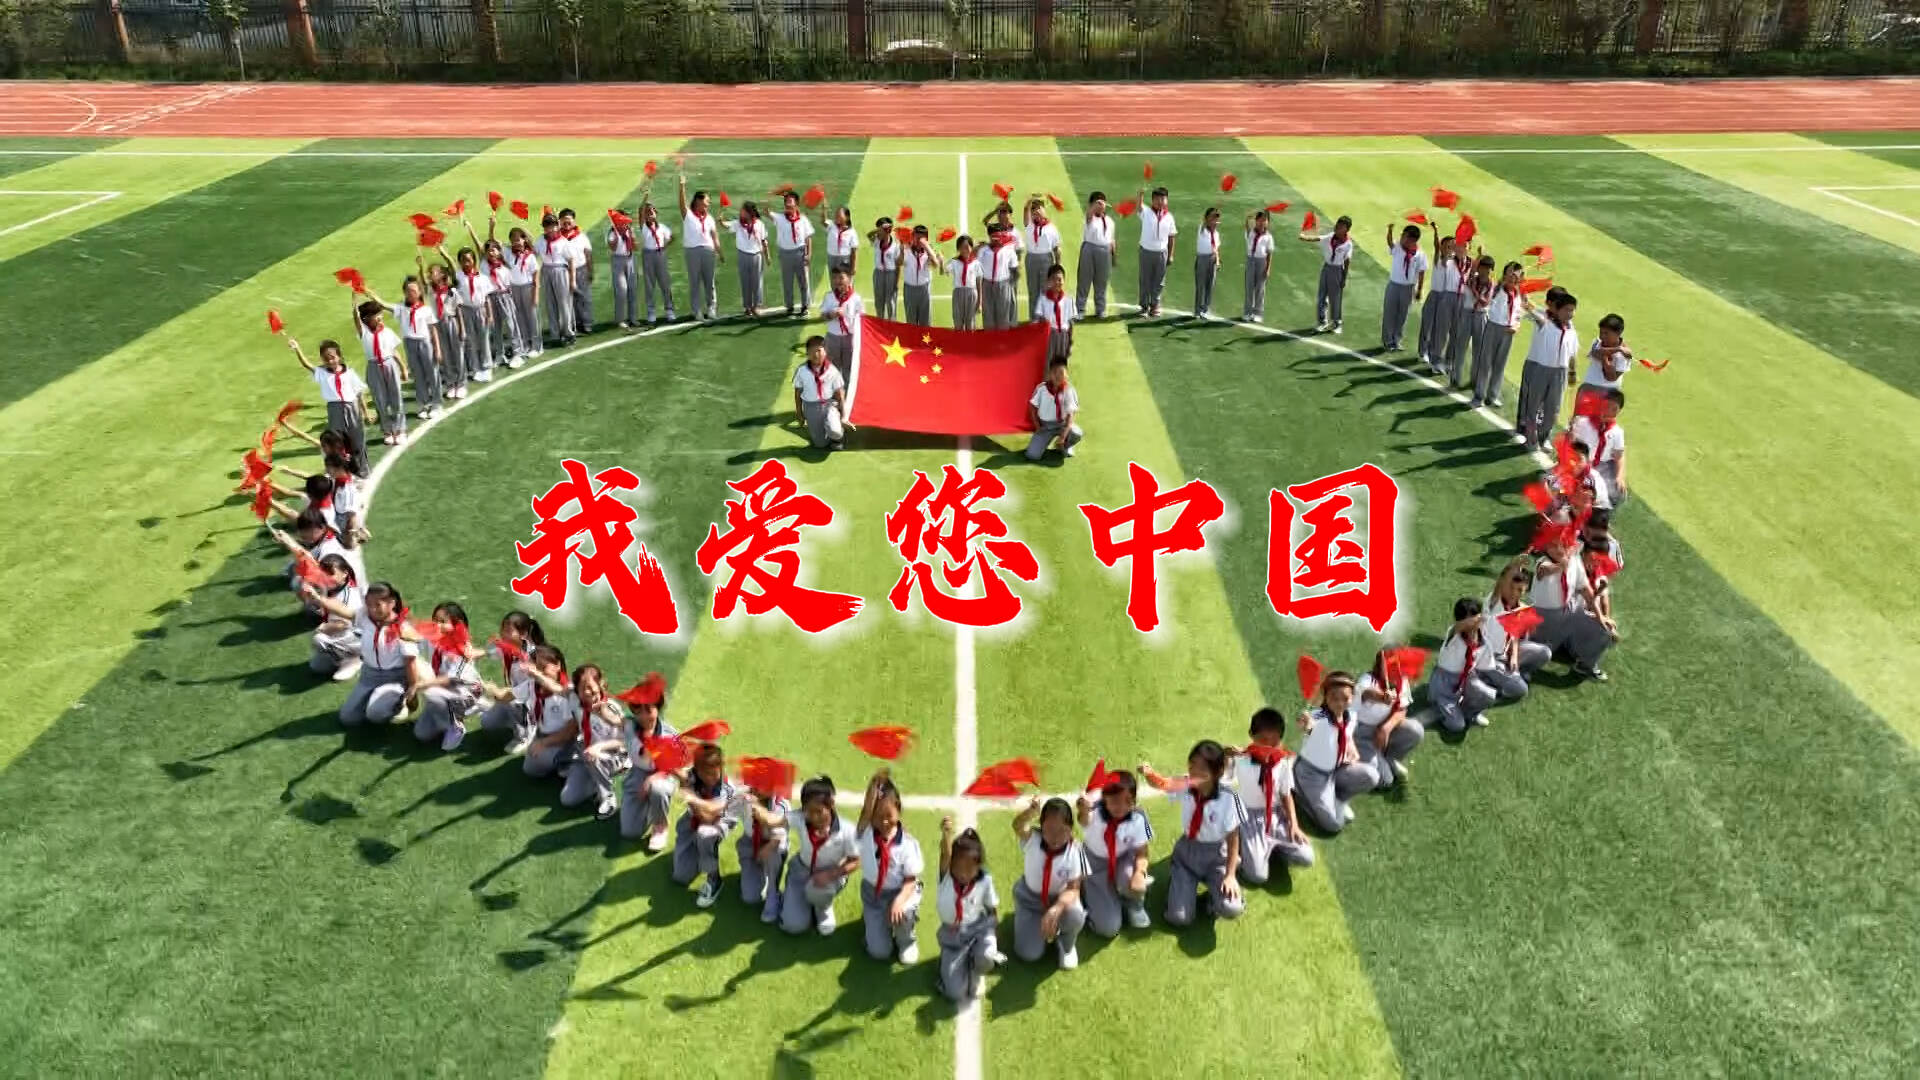 我爱您中国！同升一面旗 共祝祖国永远繁荣昌盛！